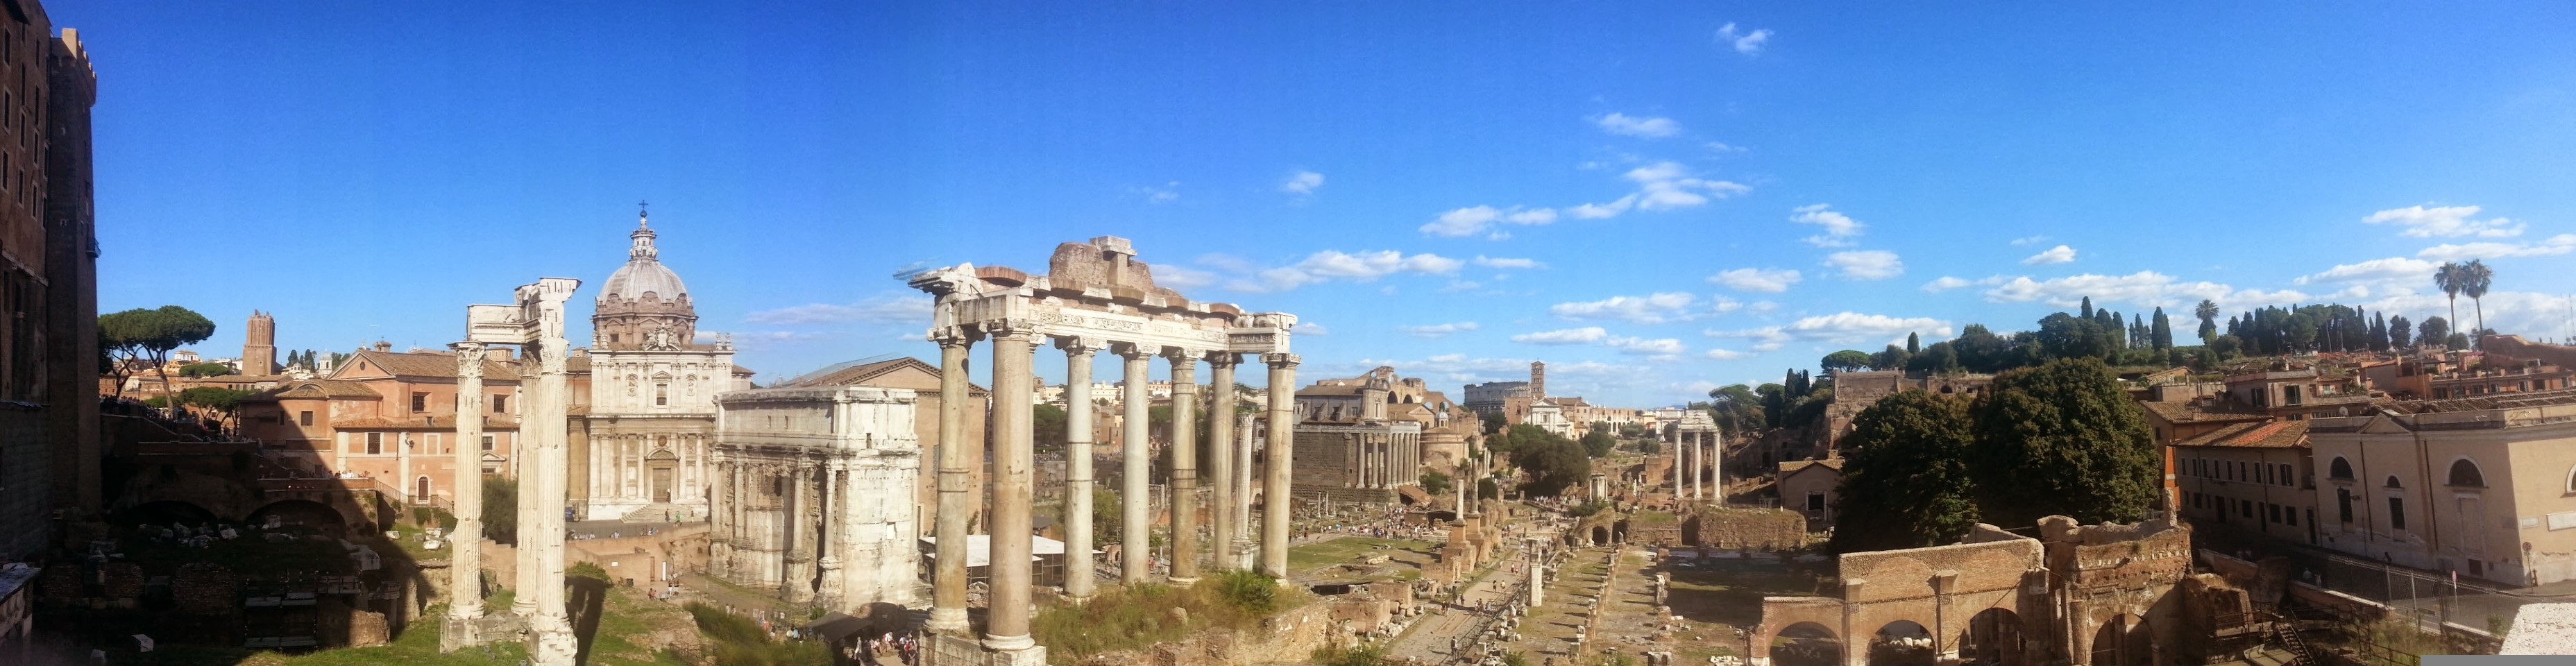 Rome, by Viktor Niniadis, published on Pixabay